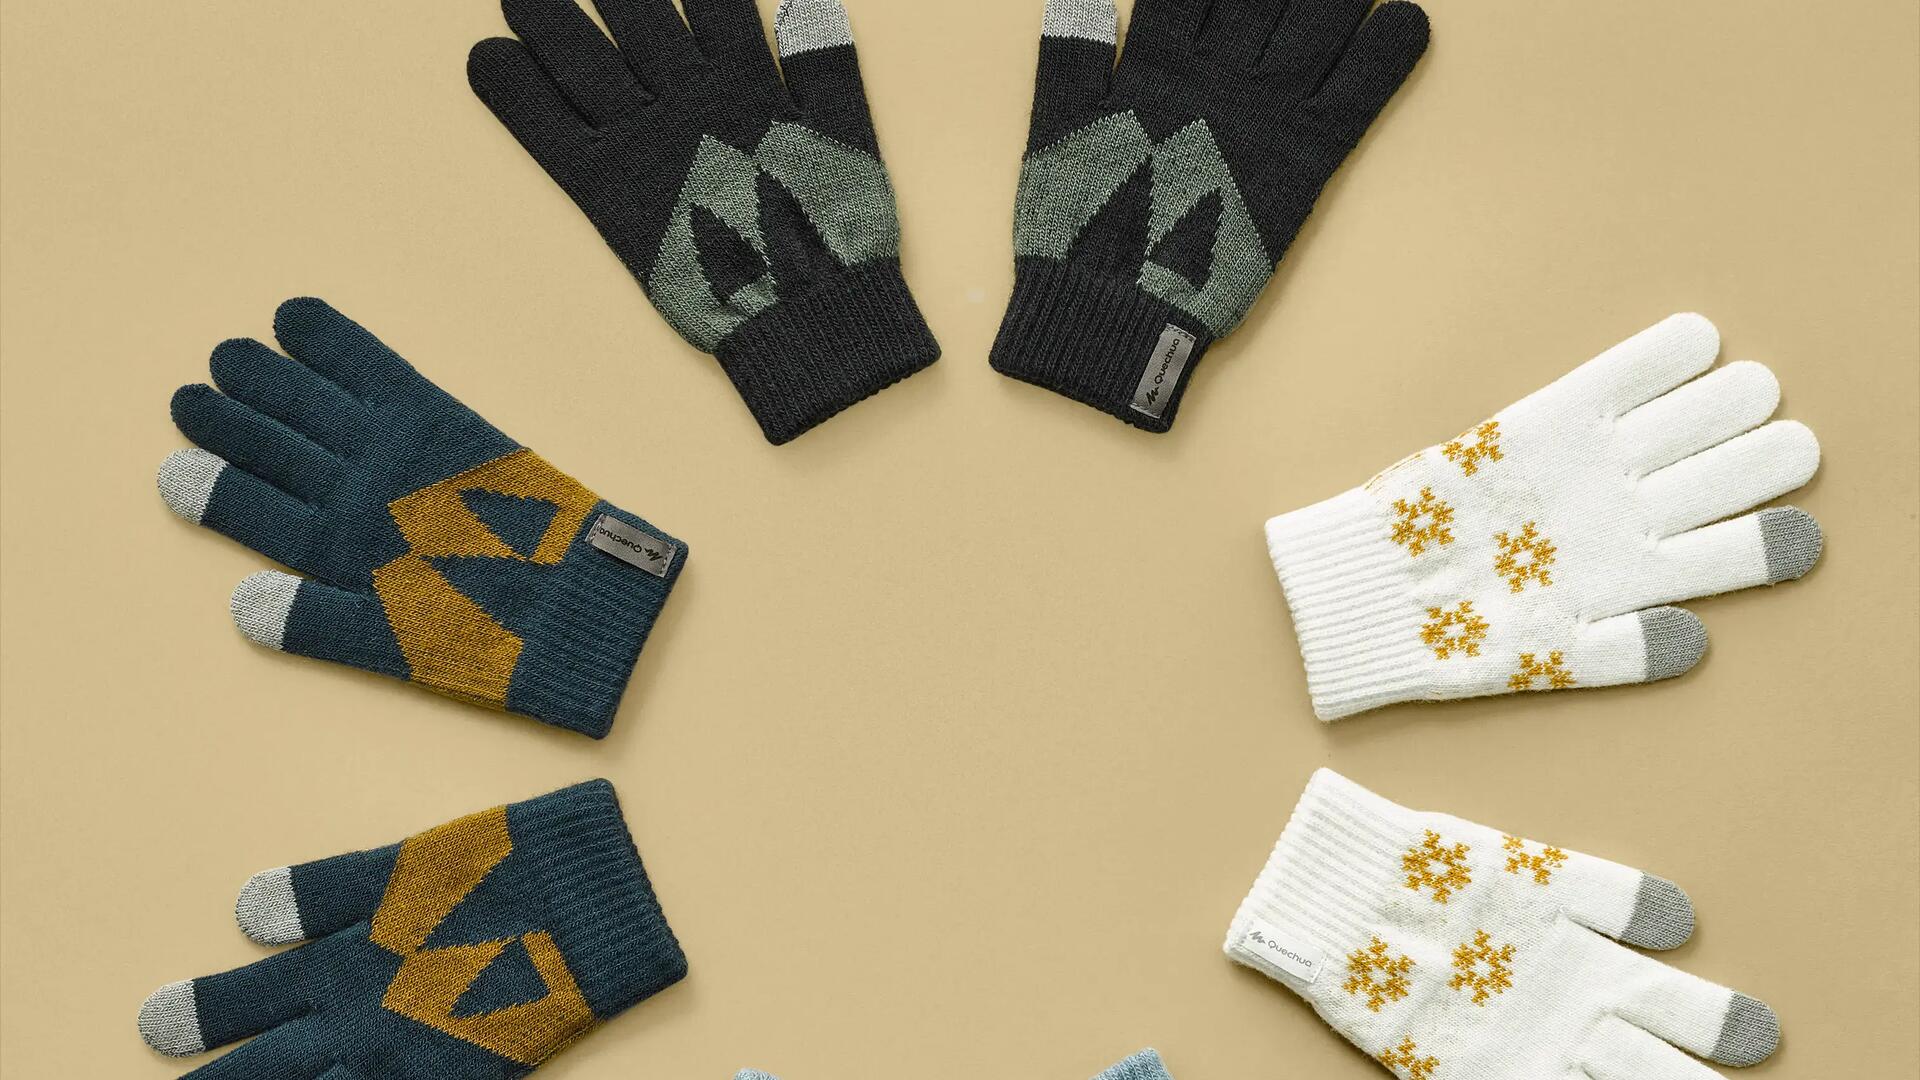 Choisir les gants de randonnée pour ses enfants